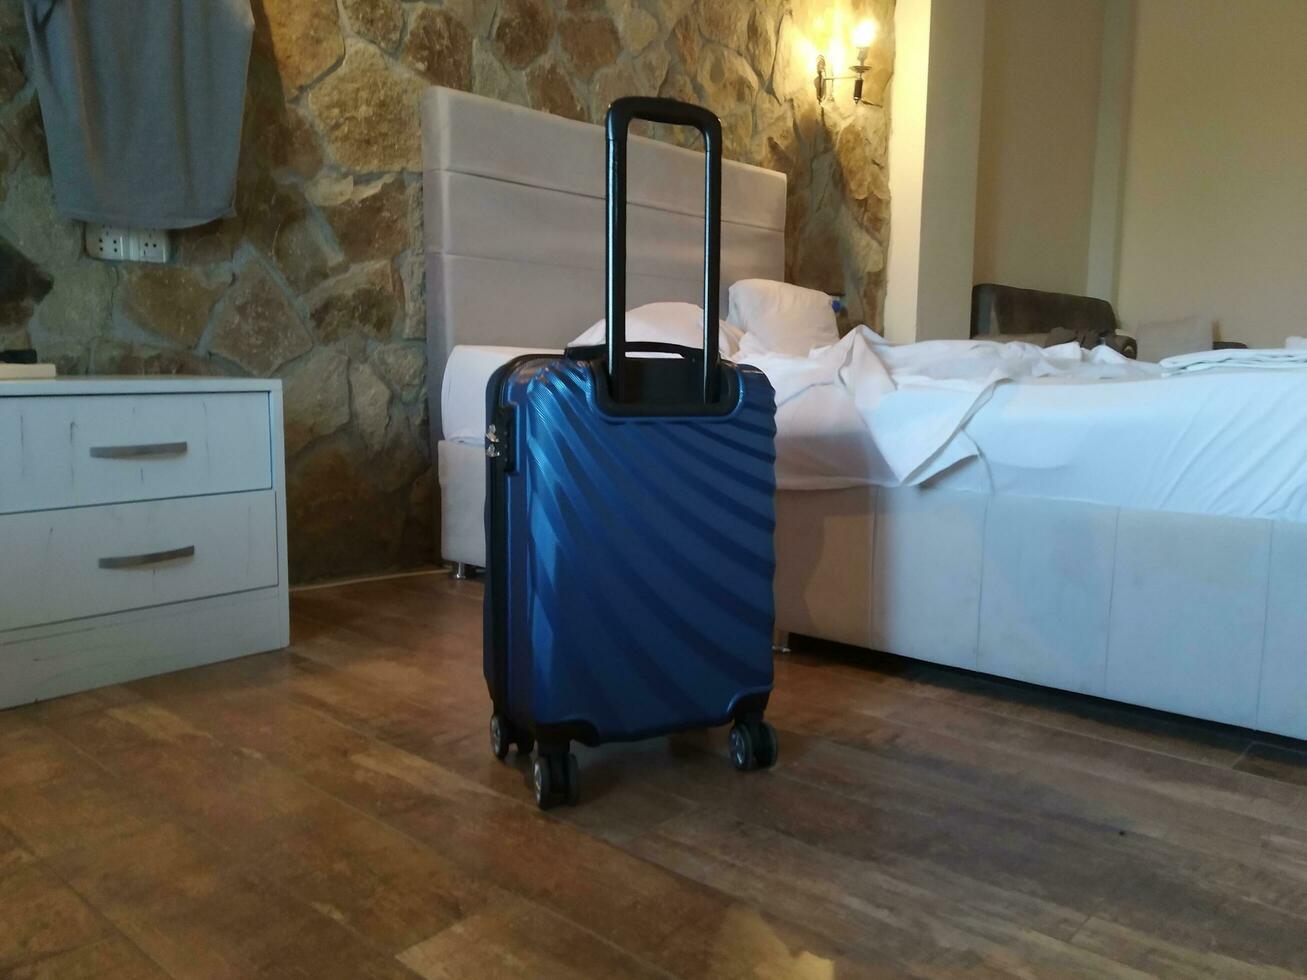 bagaglio nel il Hotel camera, pronto per viaggio. viaggio concetto foto